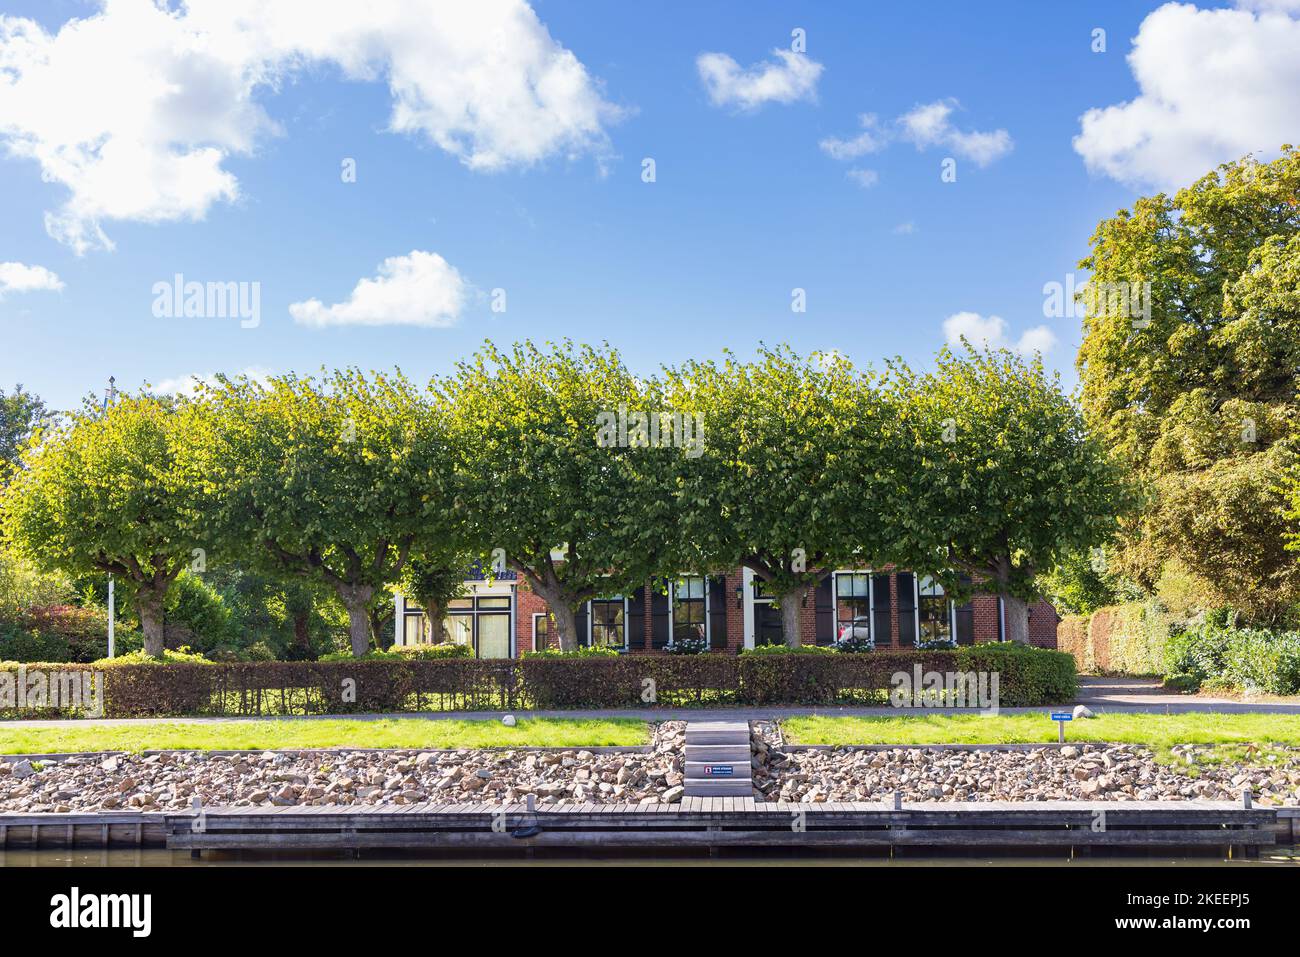 Vue panoramique sur le petit village de Briltil, municipalité de Westerkwartier dans la province de Groningen aux pays-Bas Banque D'Images